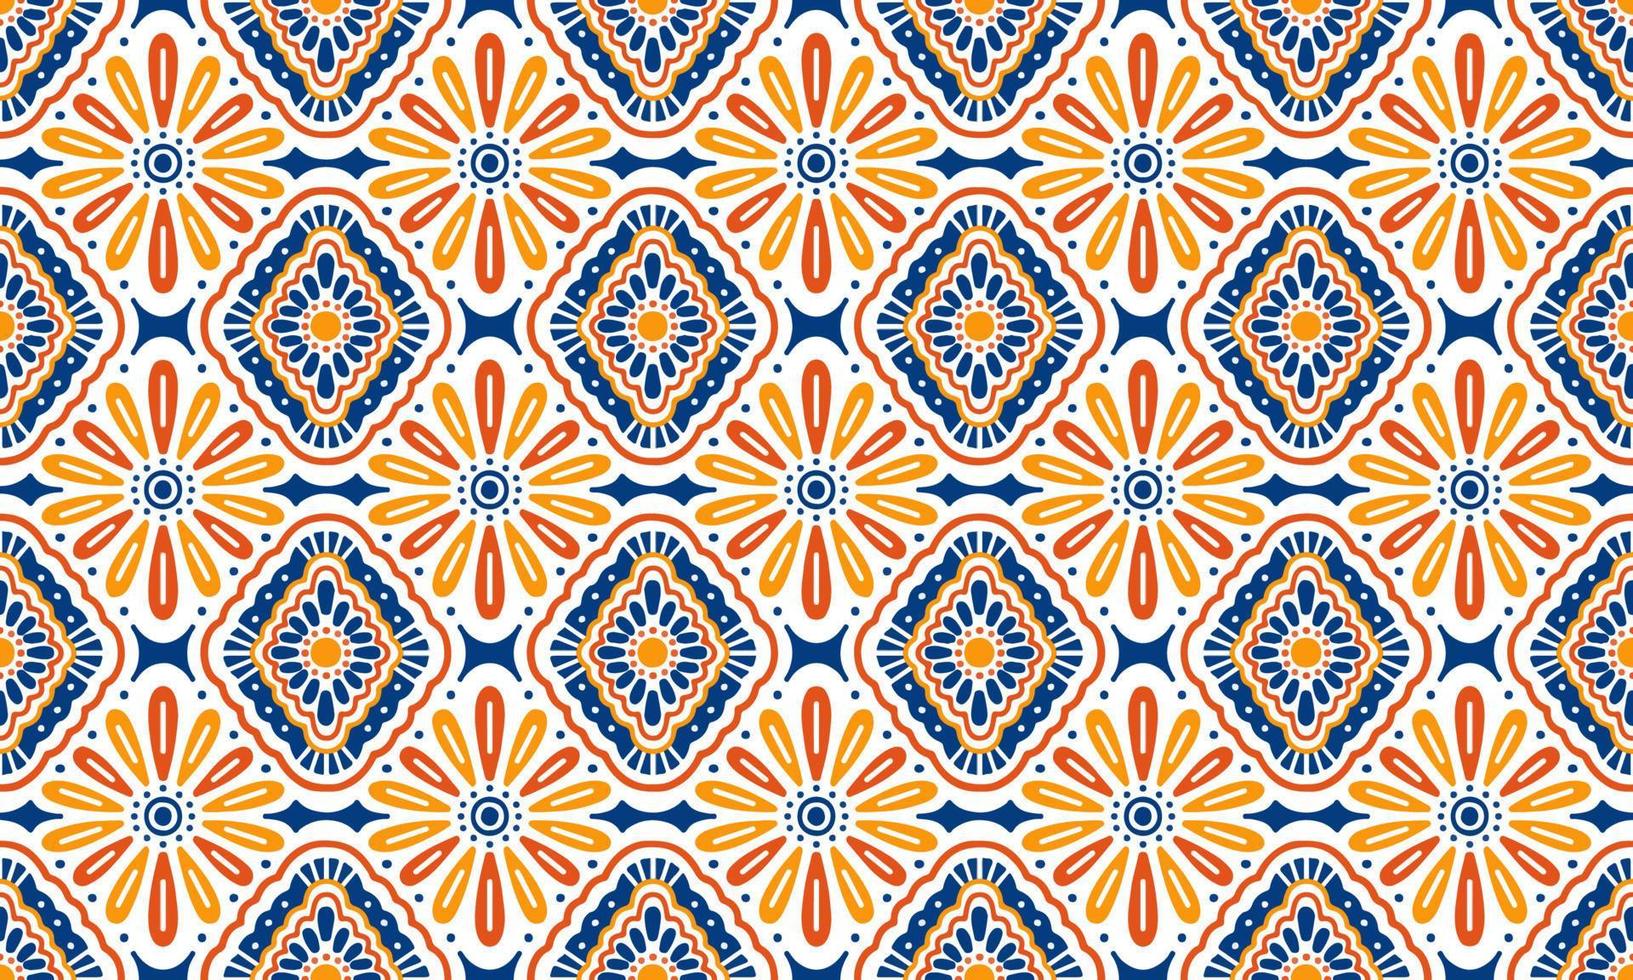 fundo étnico abstrato fofo flor azul amarela geométrica tribal ikat motivo popular árabe oriental padrão nativo design tradicional papel de parede do tapete roupas tecido embrulho impressão vetor batik folk